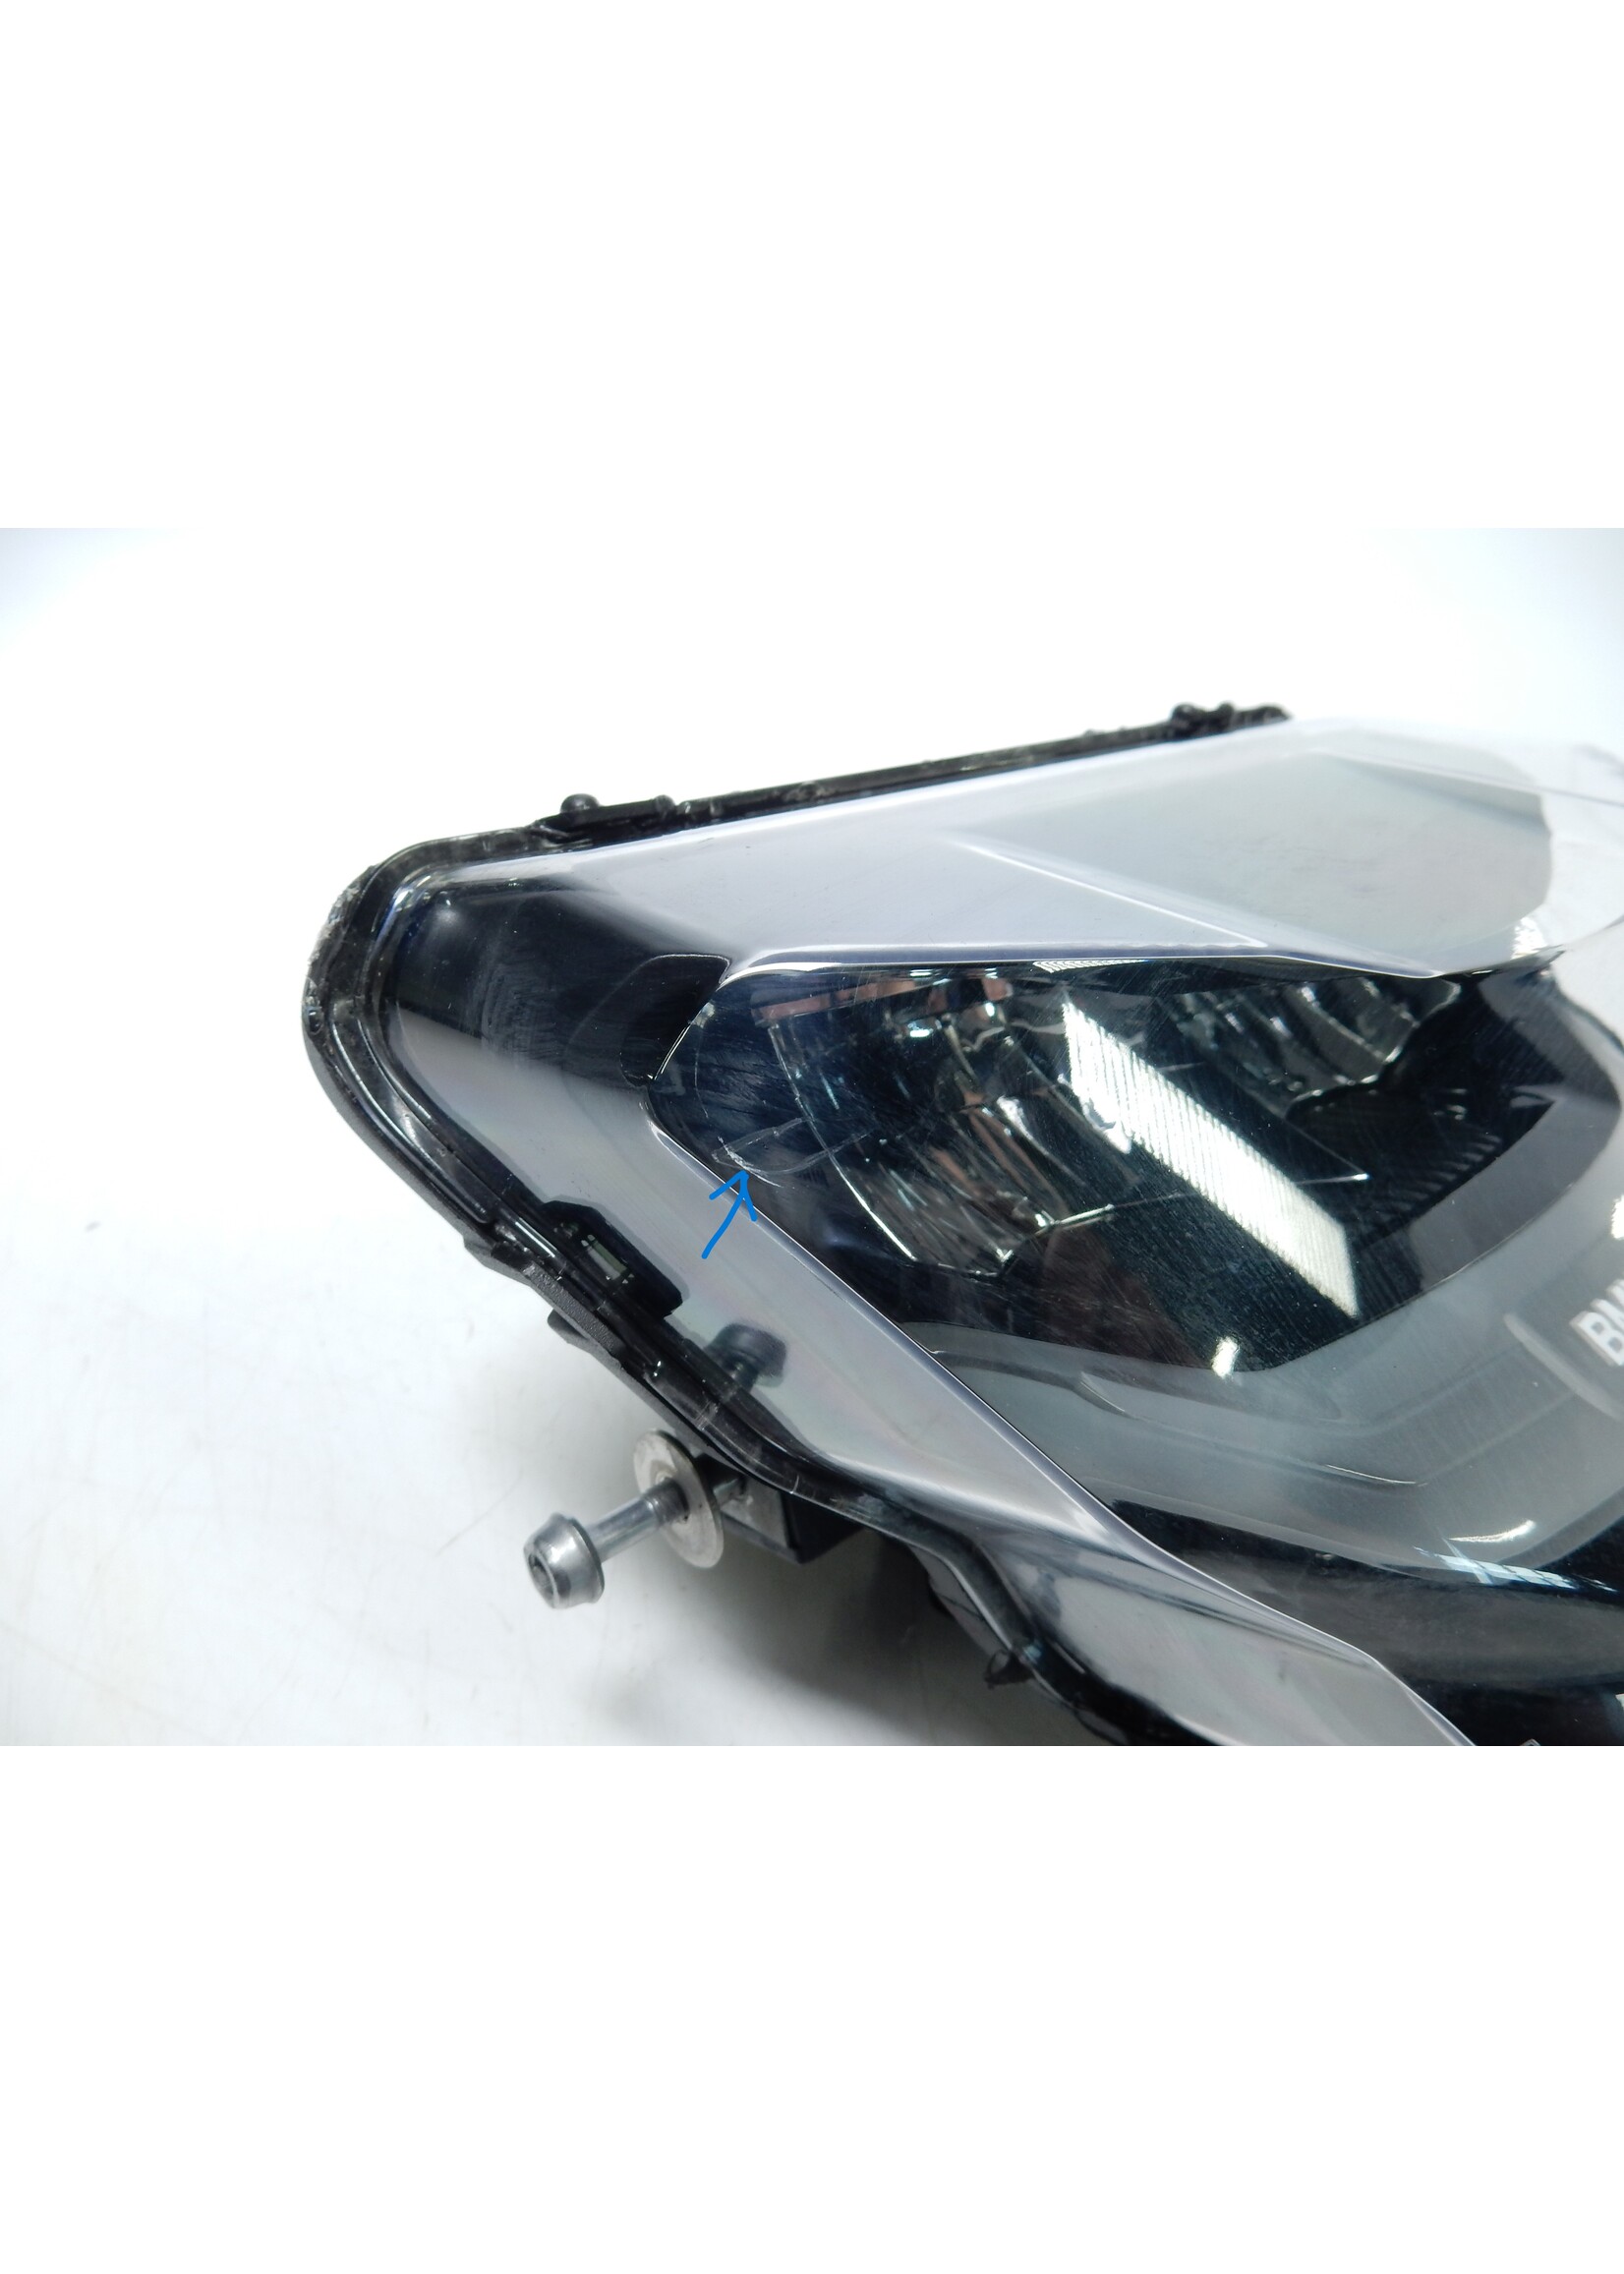 LED-Zusatzscheinwerfer für BMW Motorrad G 310 R